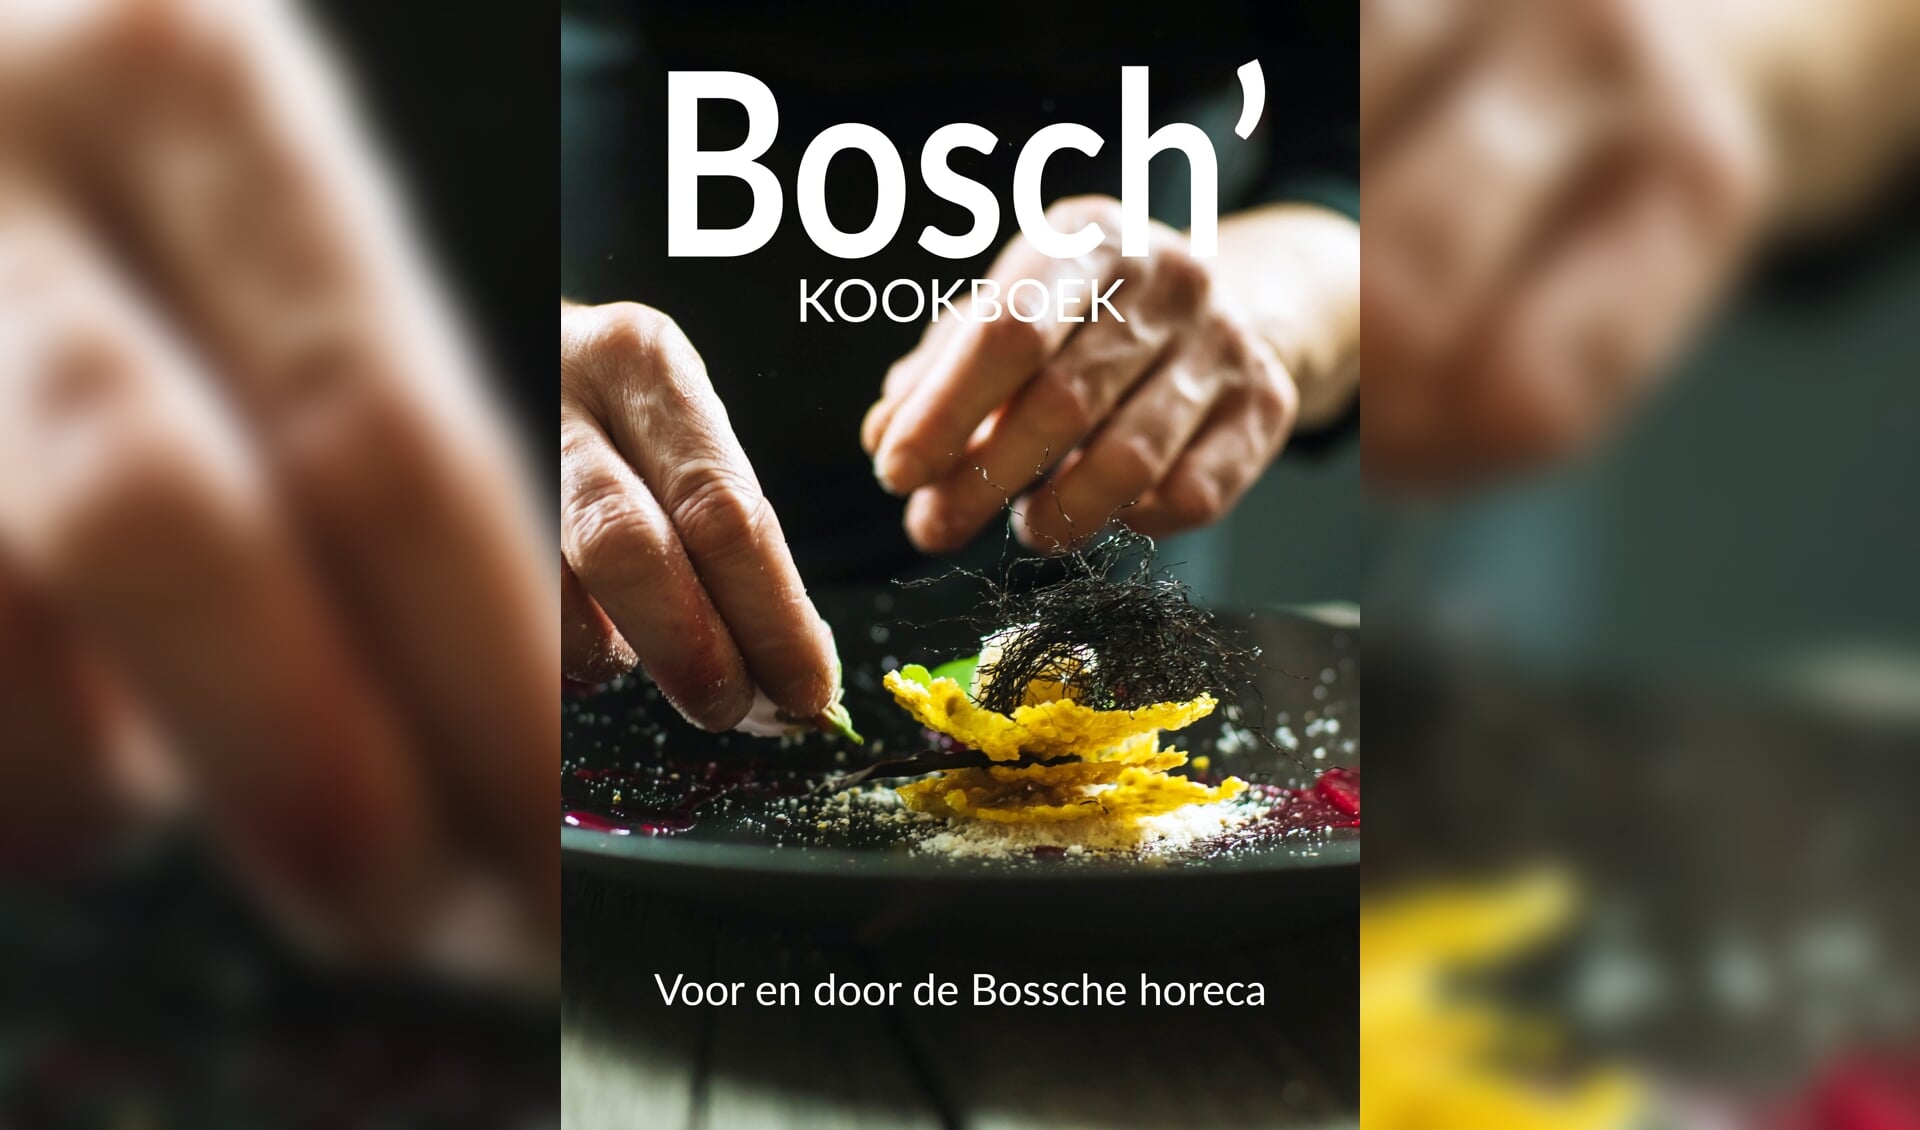 Aan het Bosch’ Kookboek wordt op dit moment nog gewerkt, maar het kan nu wel al besteld worden. 